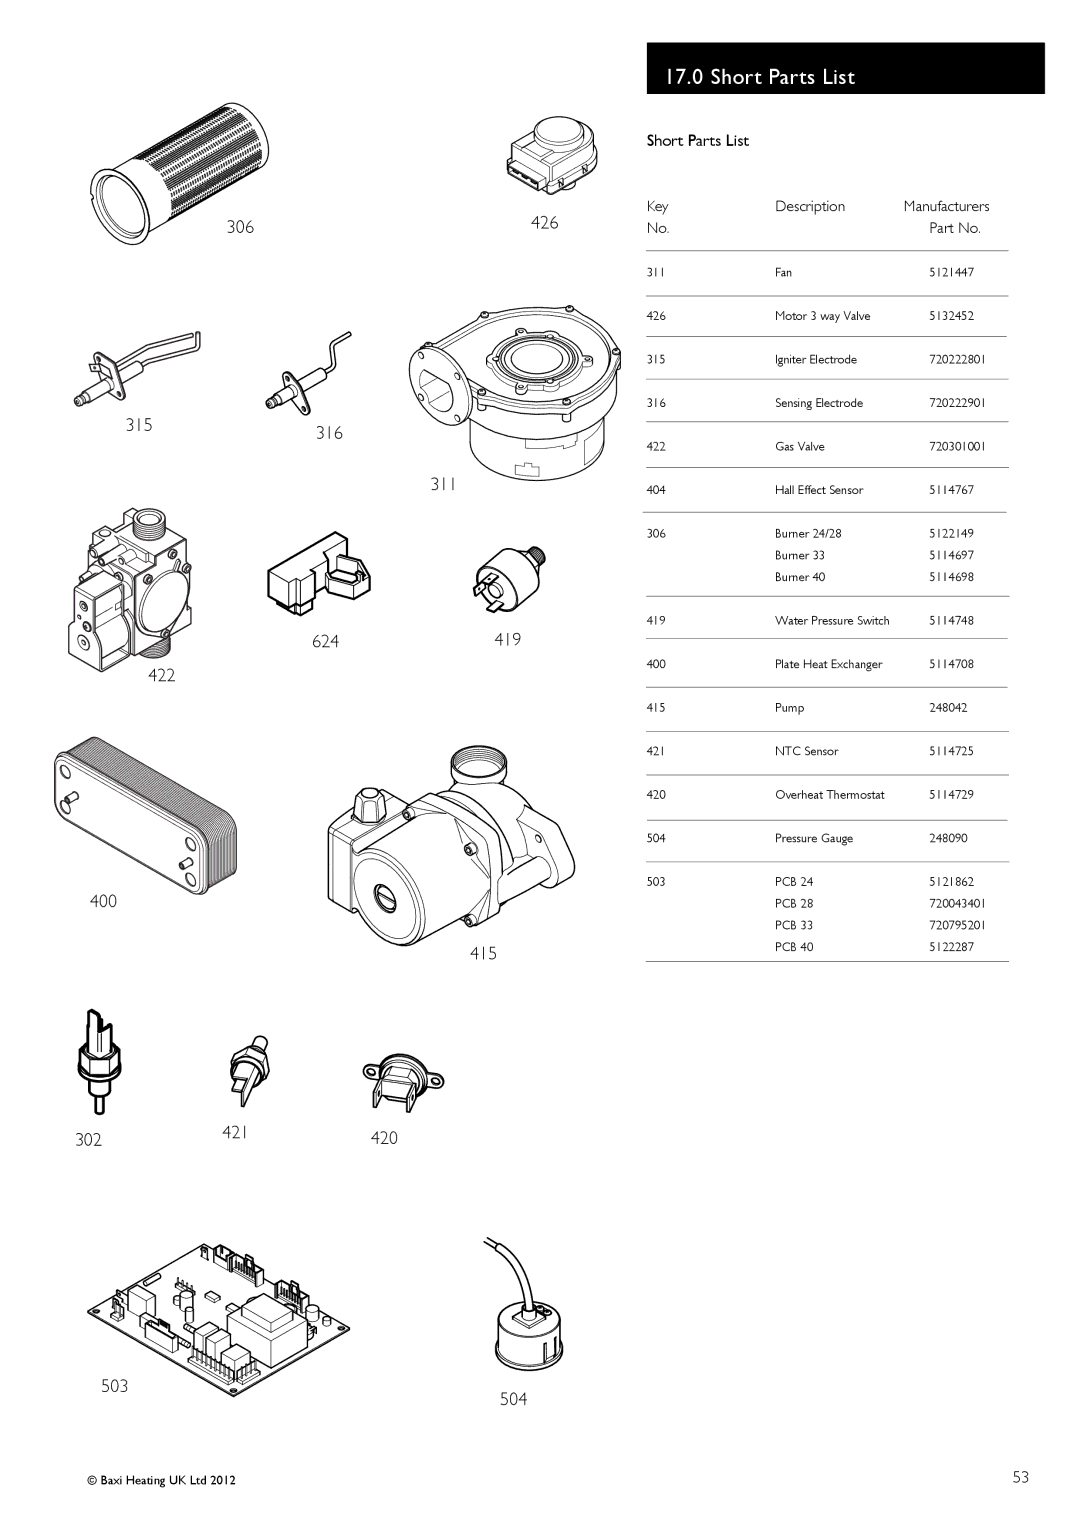 Baxi Potterton 47-393-39, 47-393-40, 47-393-41, 47-393-42 manual Short Parts List, 306, 302, Key Description Manufacturers 